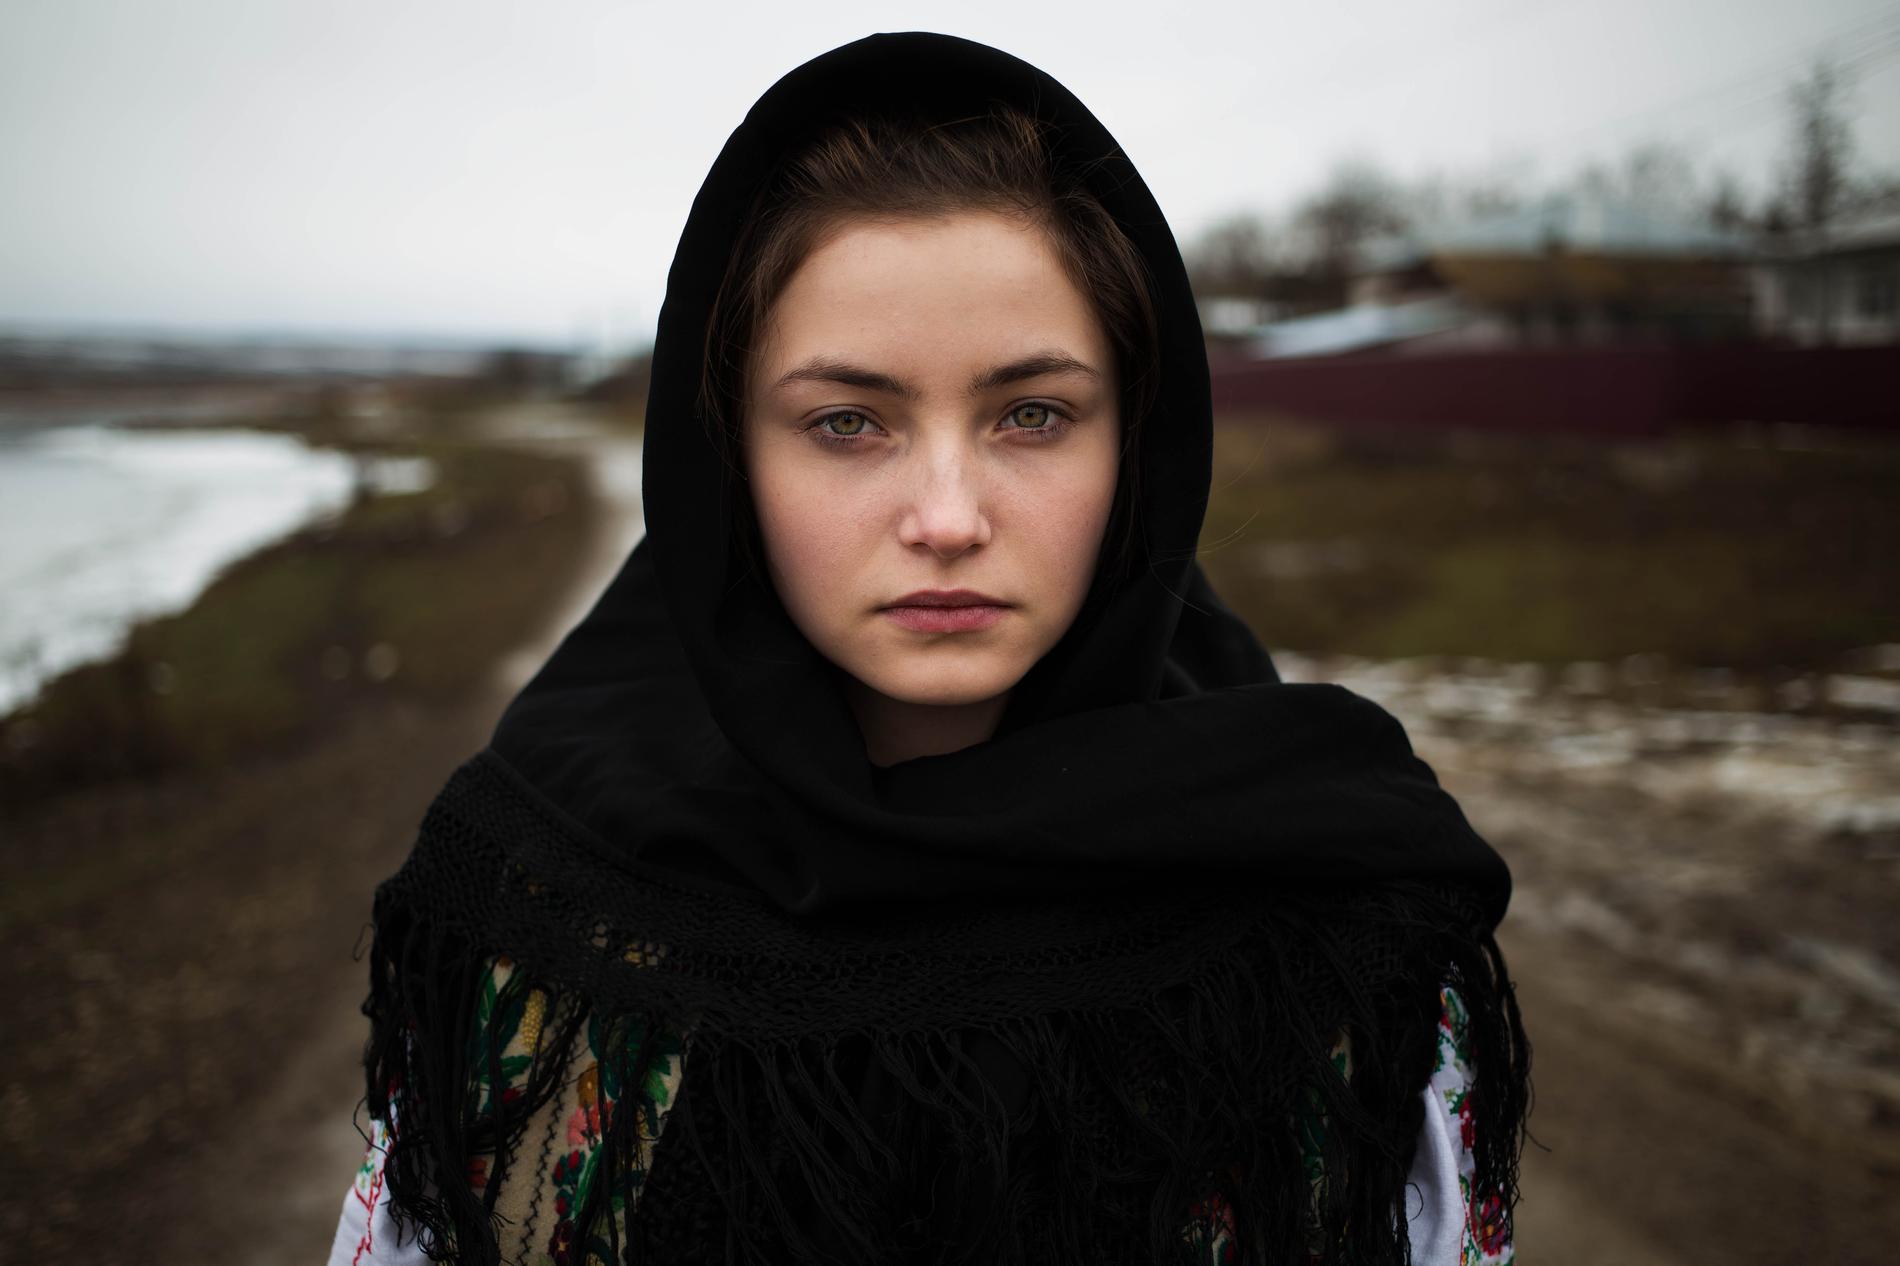 La beauté des femmes par Mihaela Noroc 